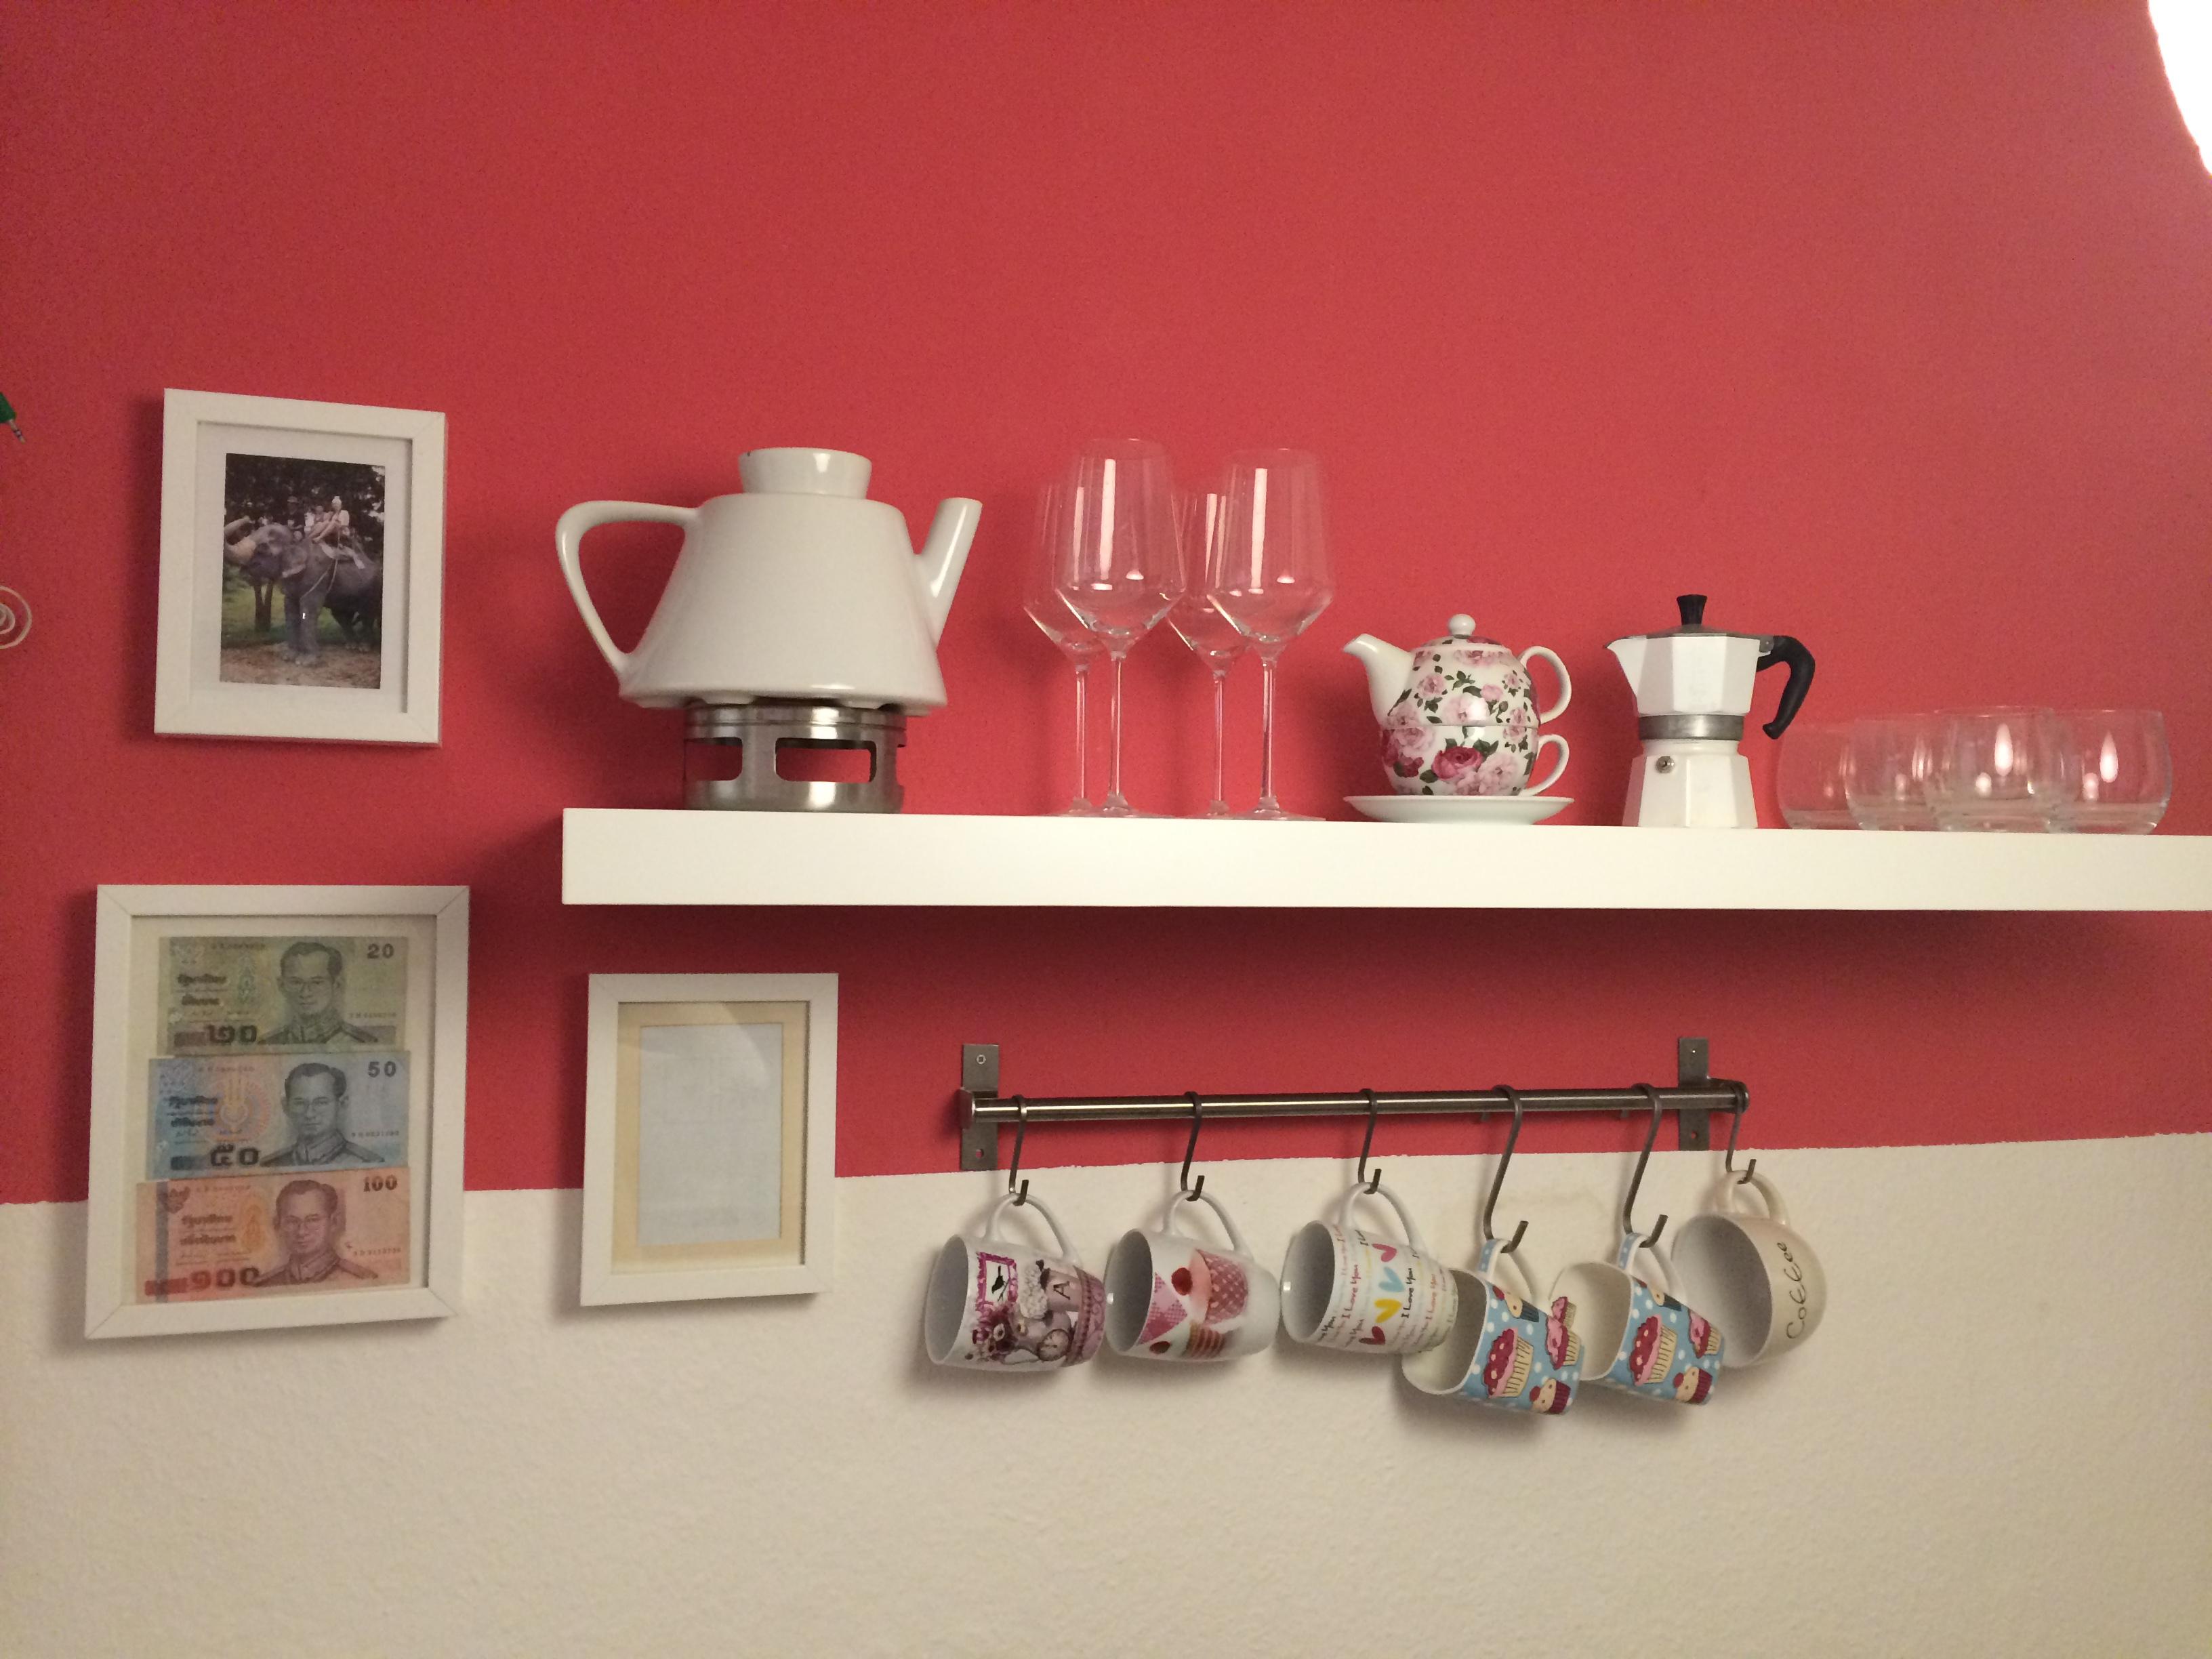 Küchenwand sin-&stilvoll genutzt #ikea #bilder ©Laura Schumm